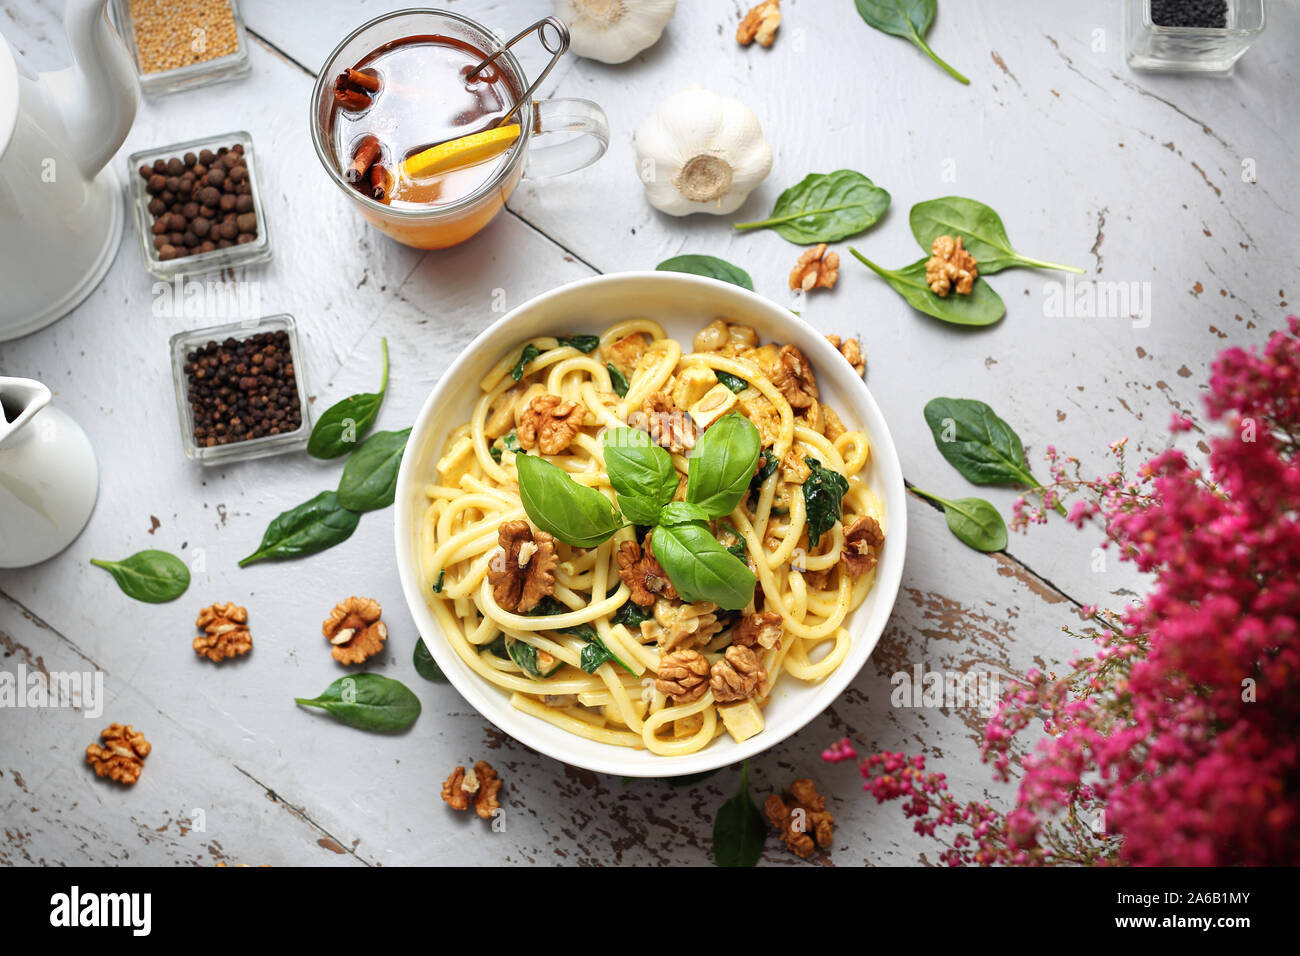 Spaghetti di pasta in una salsa alla panna con spinaci freschi, aglio, noci Foto Stock